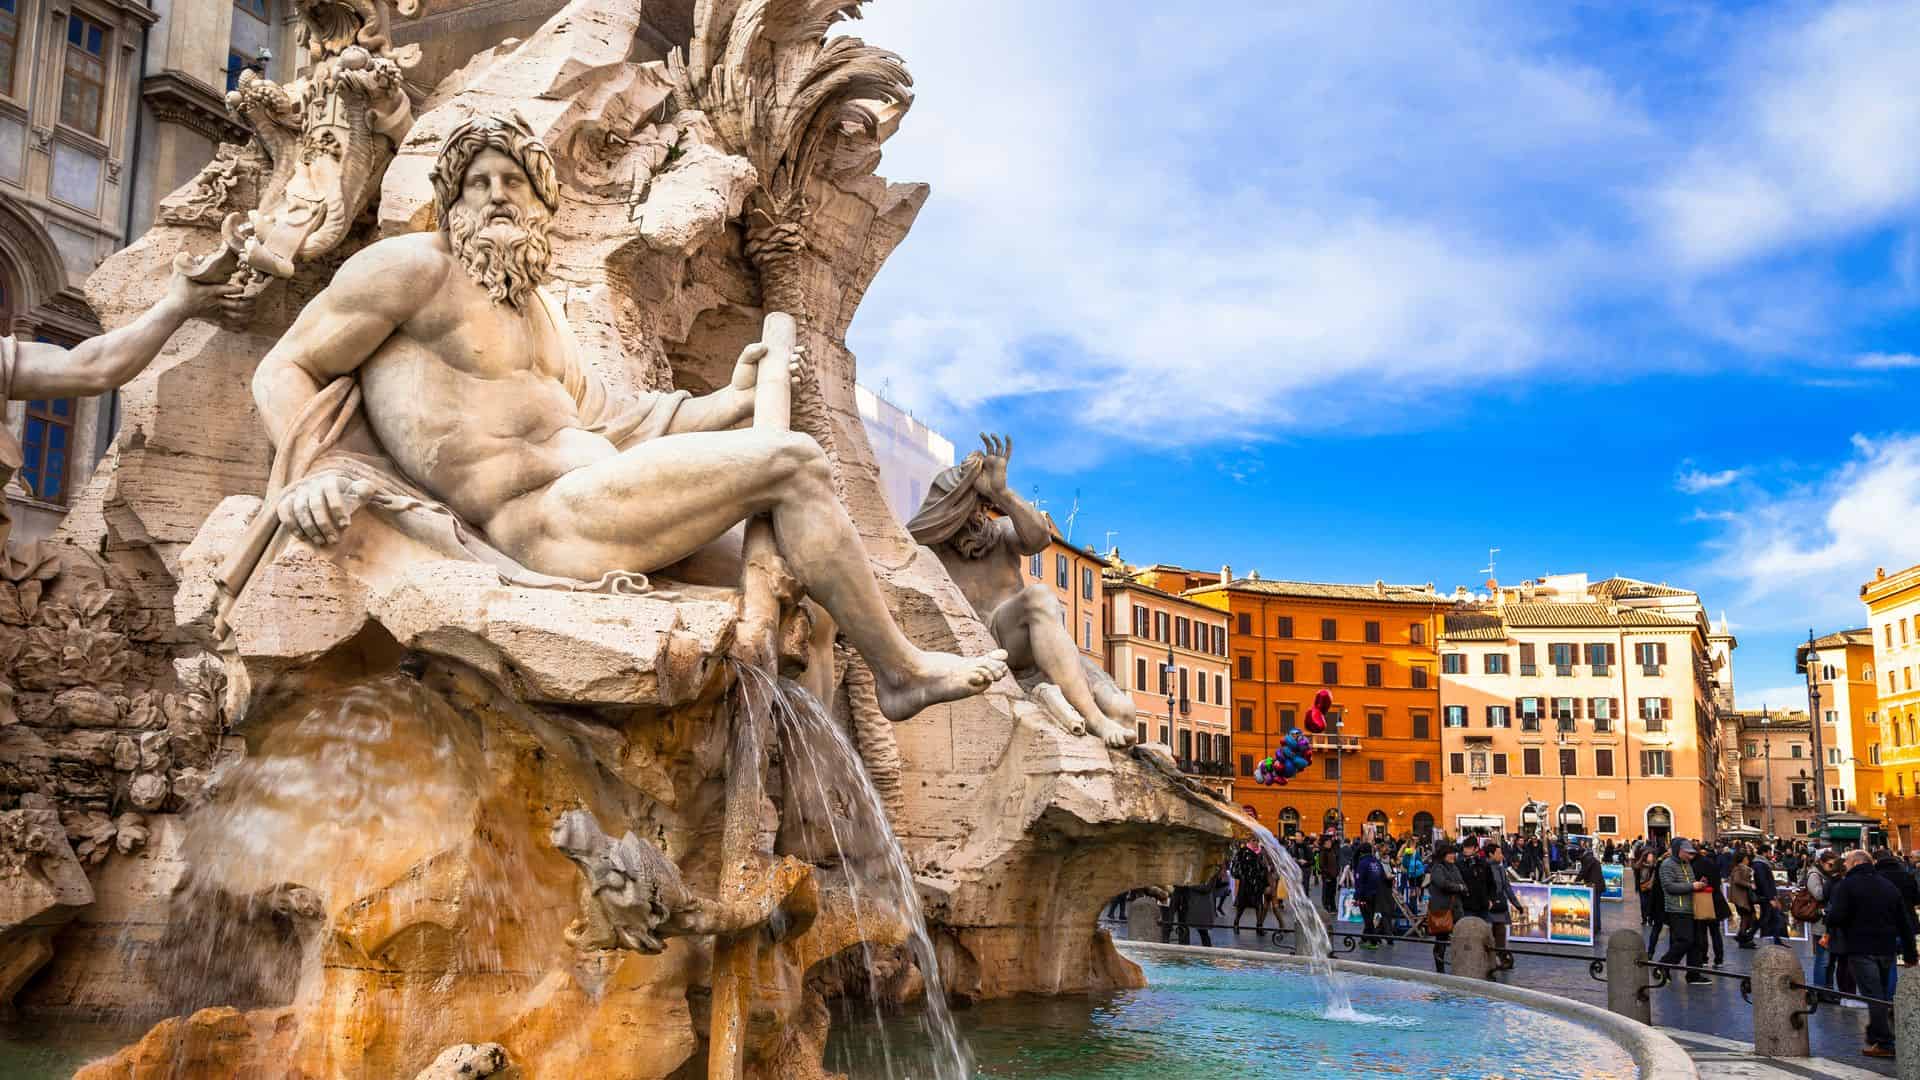 The Fontana dei Quattro Fiumi at Piazza Navona in Rome